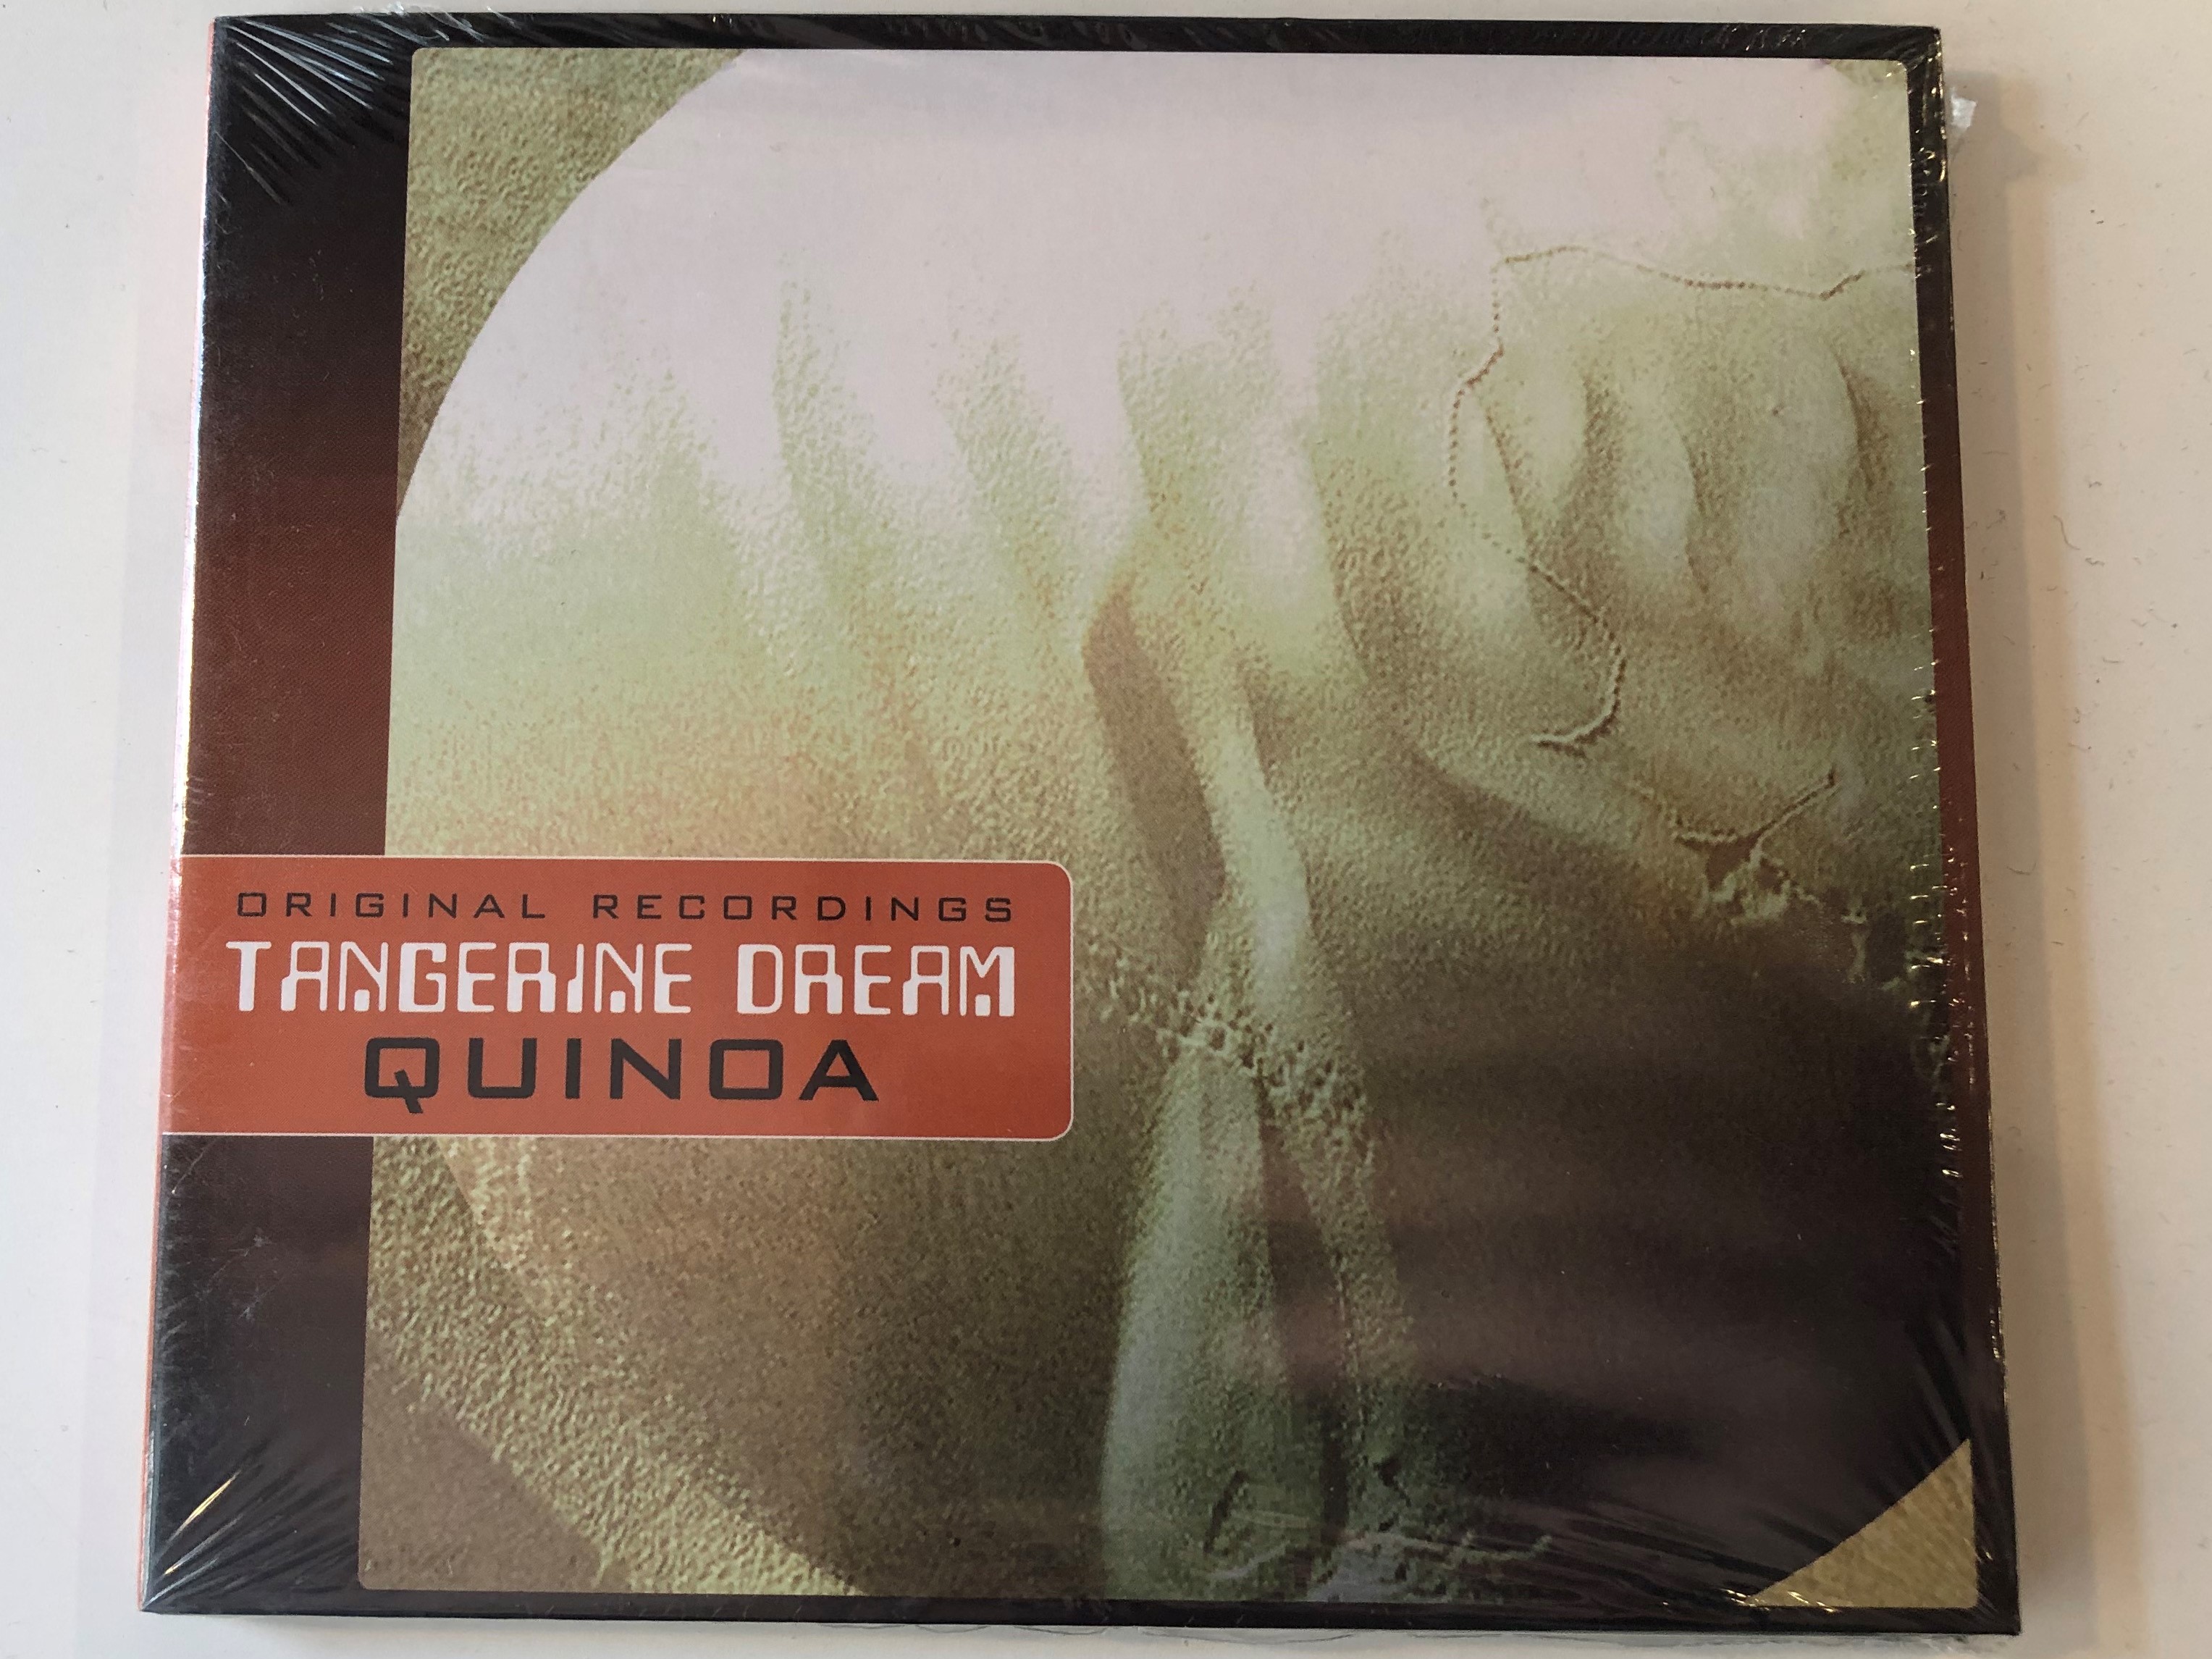 tangerine-dream-quinoa-original-recordings-documents-audio-cd-stereo-232644-1-.jpg